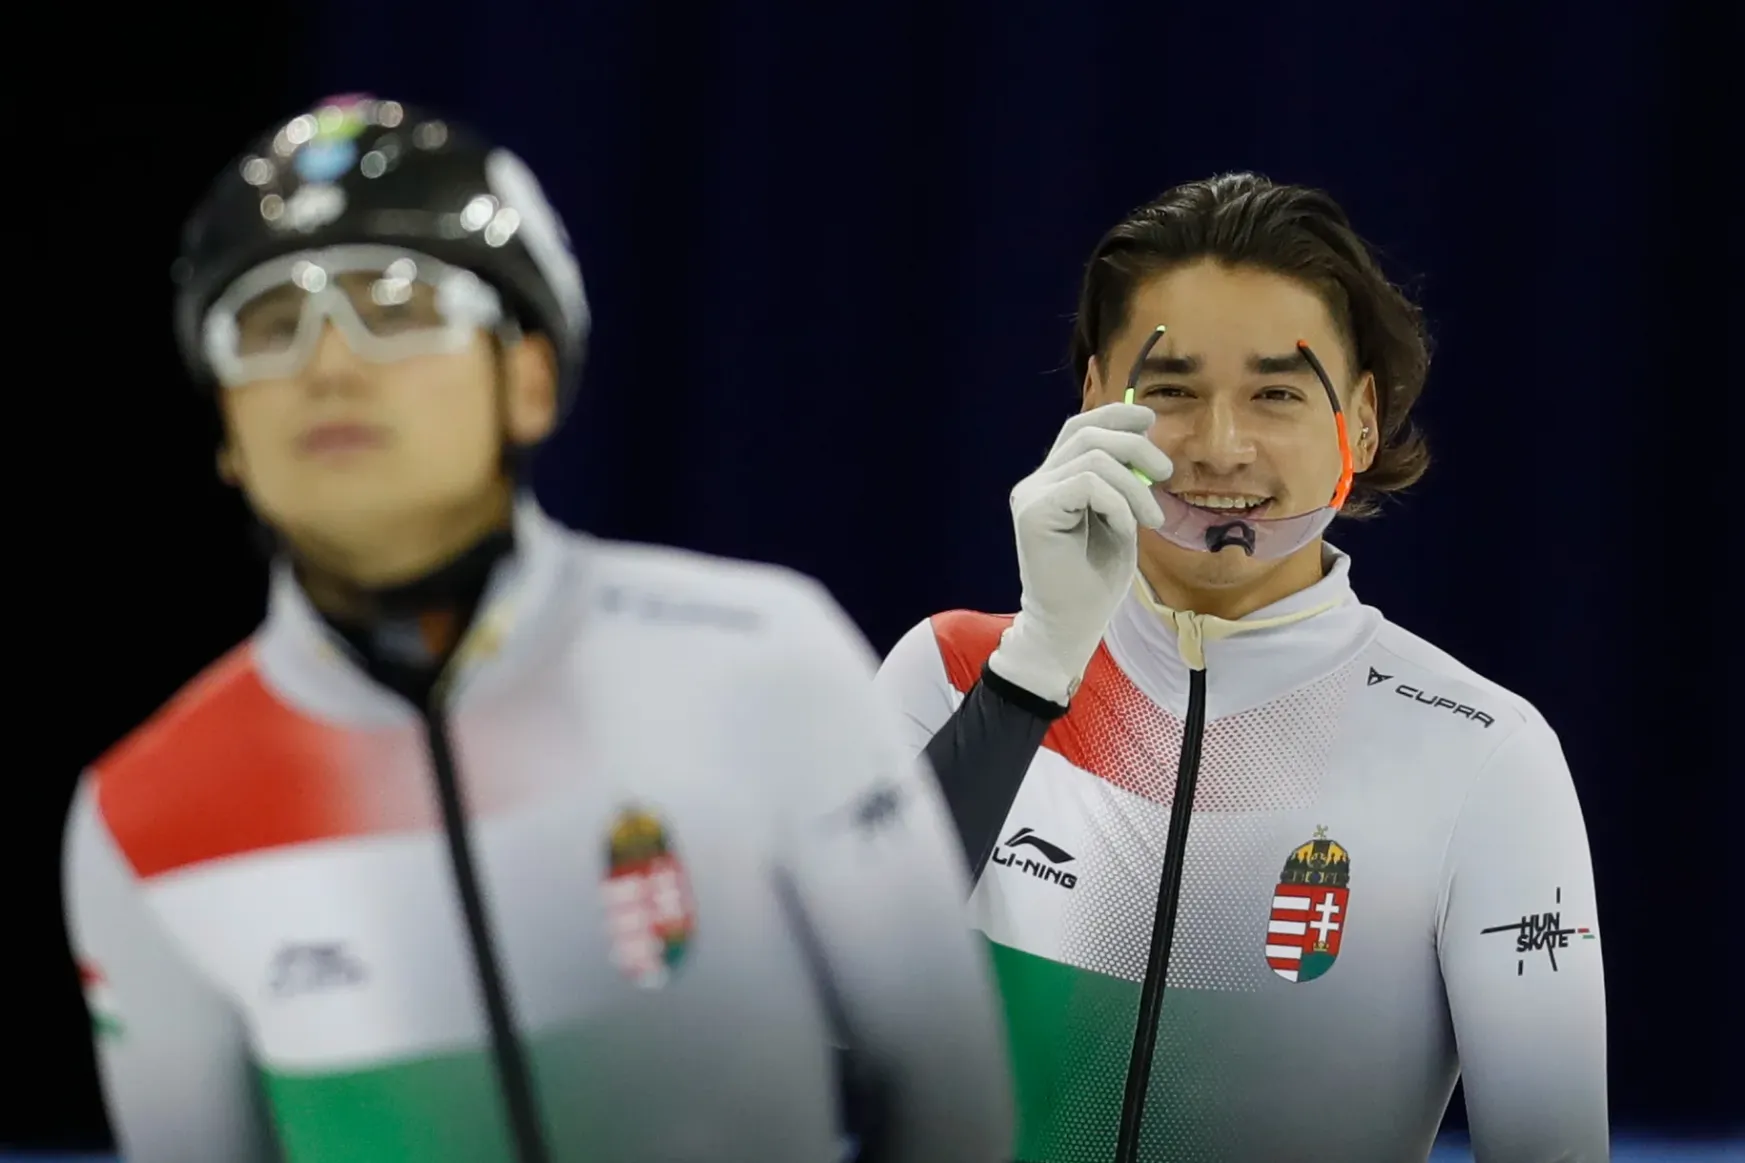 Liuék ügye: több állami pénzt kap egy magyar olimpiai bajnok, mint egy kínai, de ott vannak más juttatások